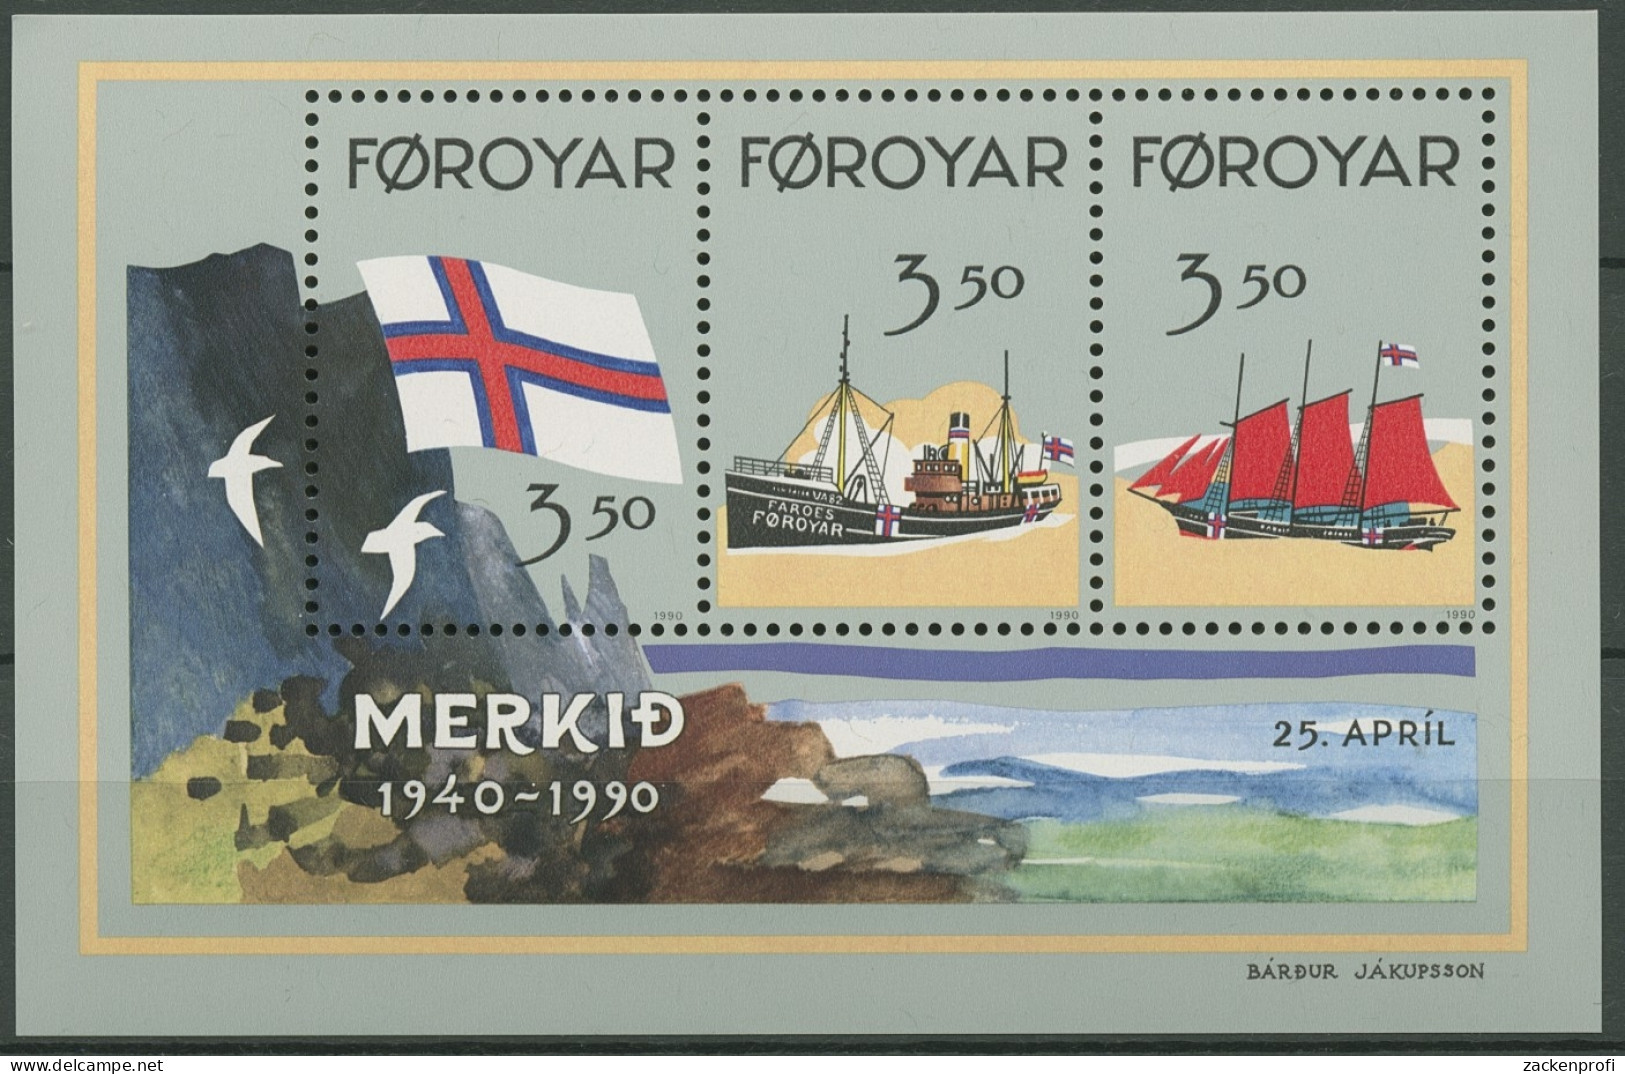 Färöer 1990 50 Jahre Flagge Der Färöer-Inseln Block 4 Postfrisch (C17503) - Féroé (Iles)